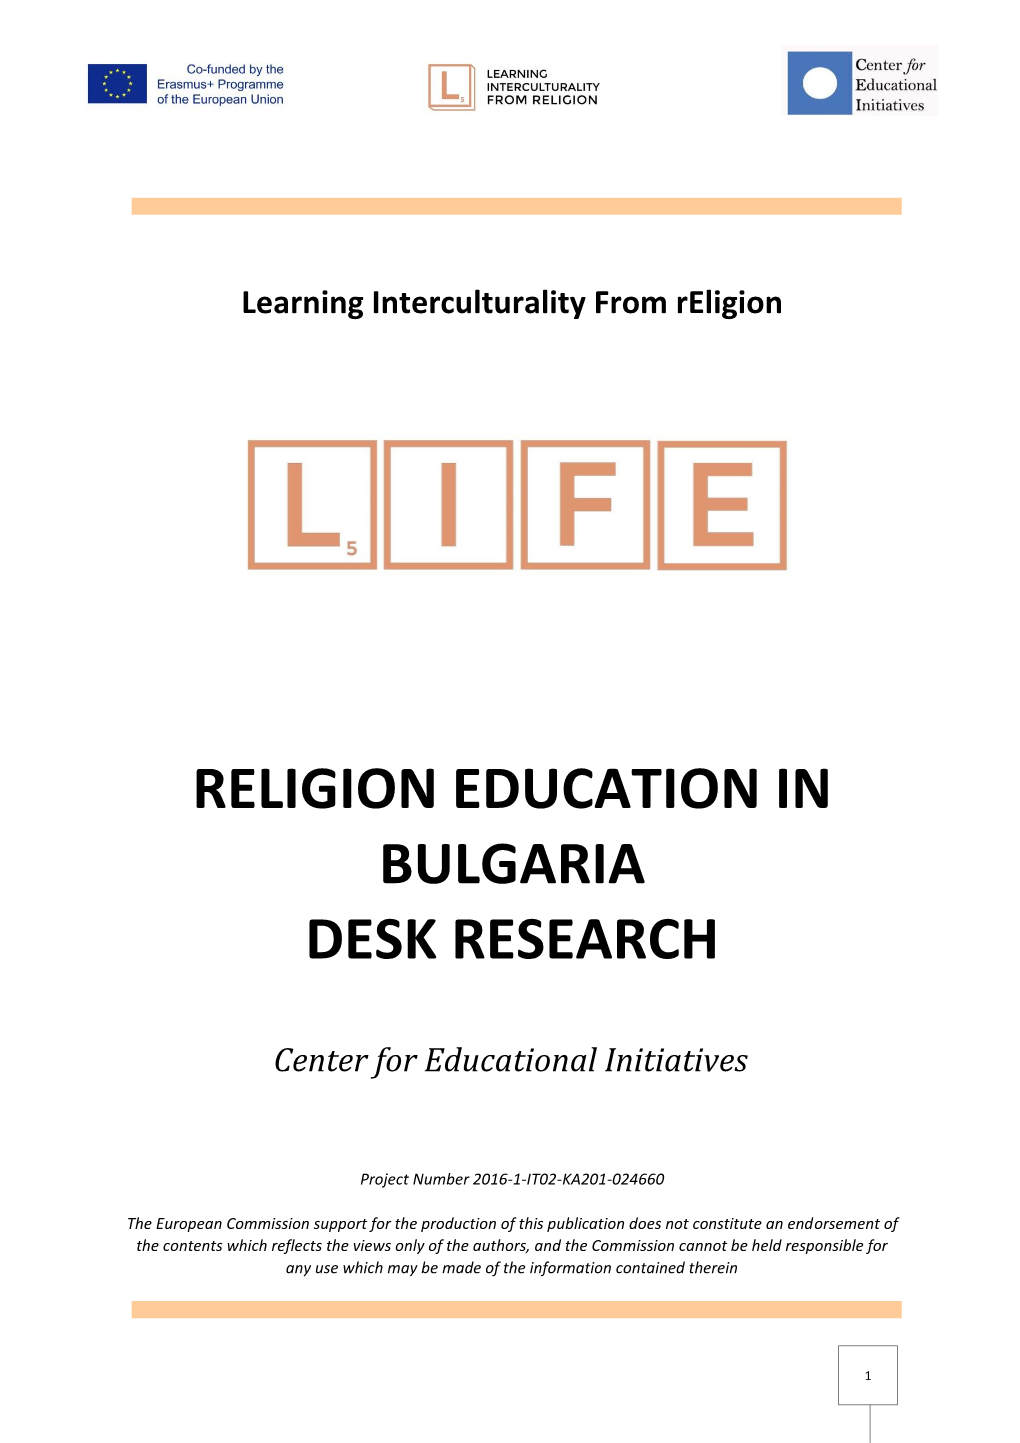 Religion Education in Bulgaria Desk Research